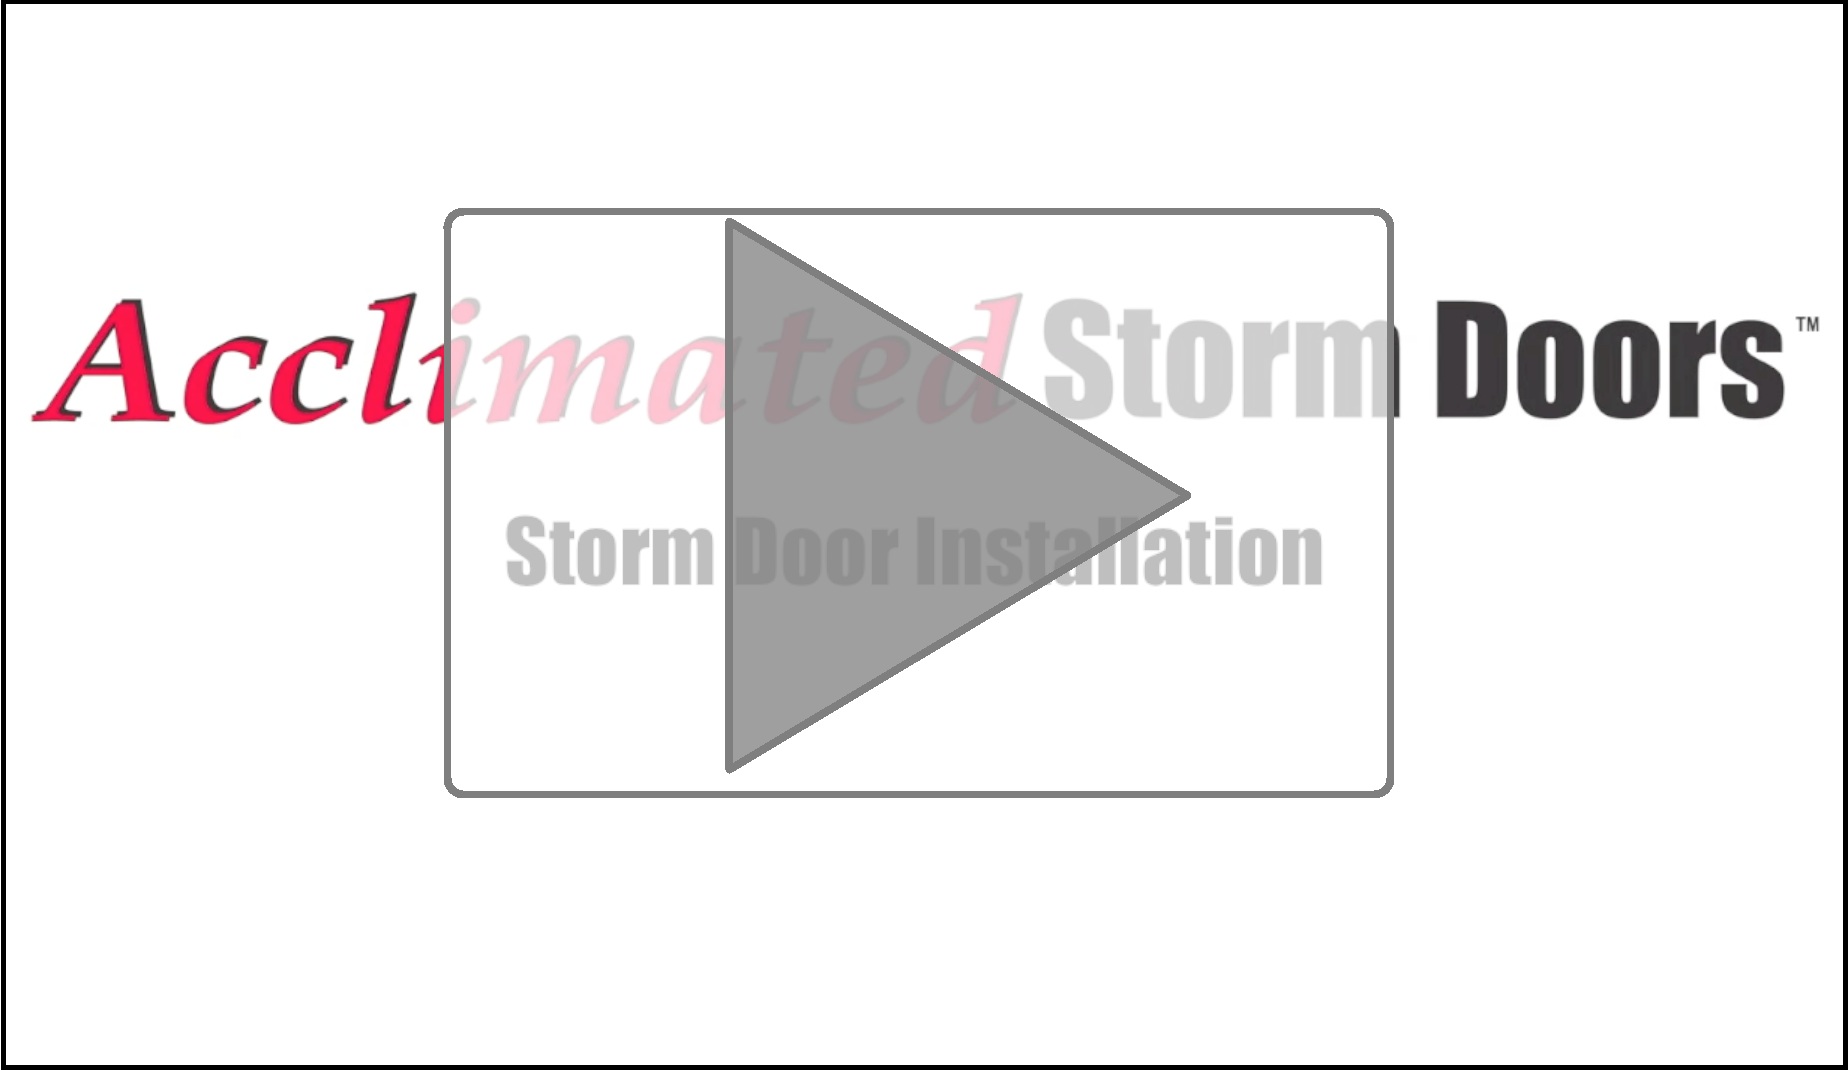 Acclimated Storm Door Video